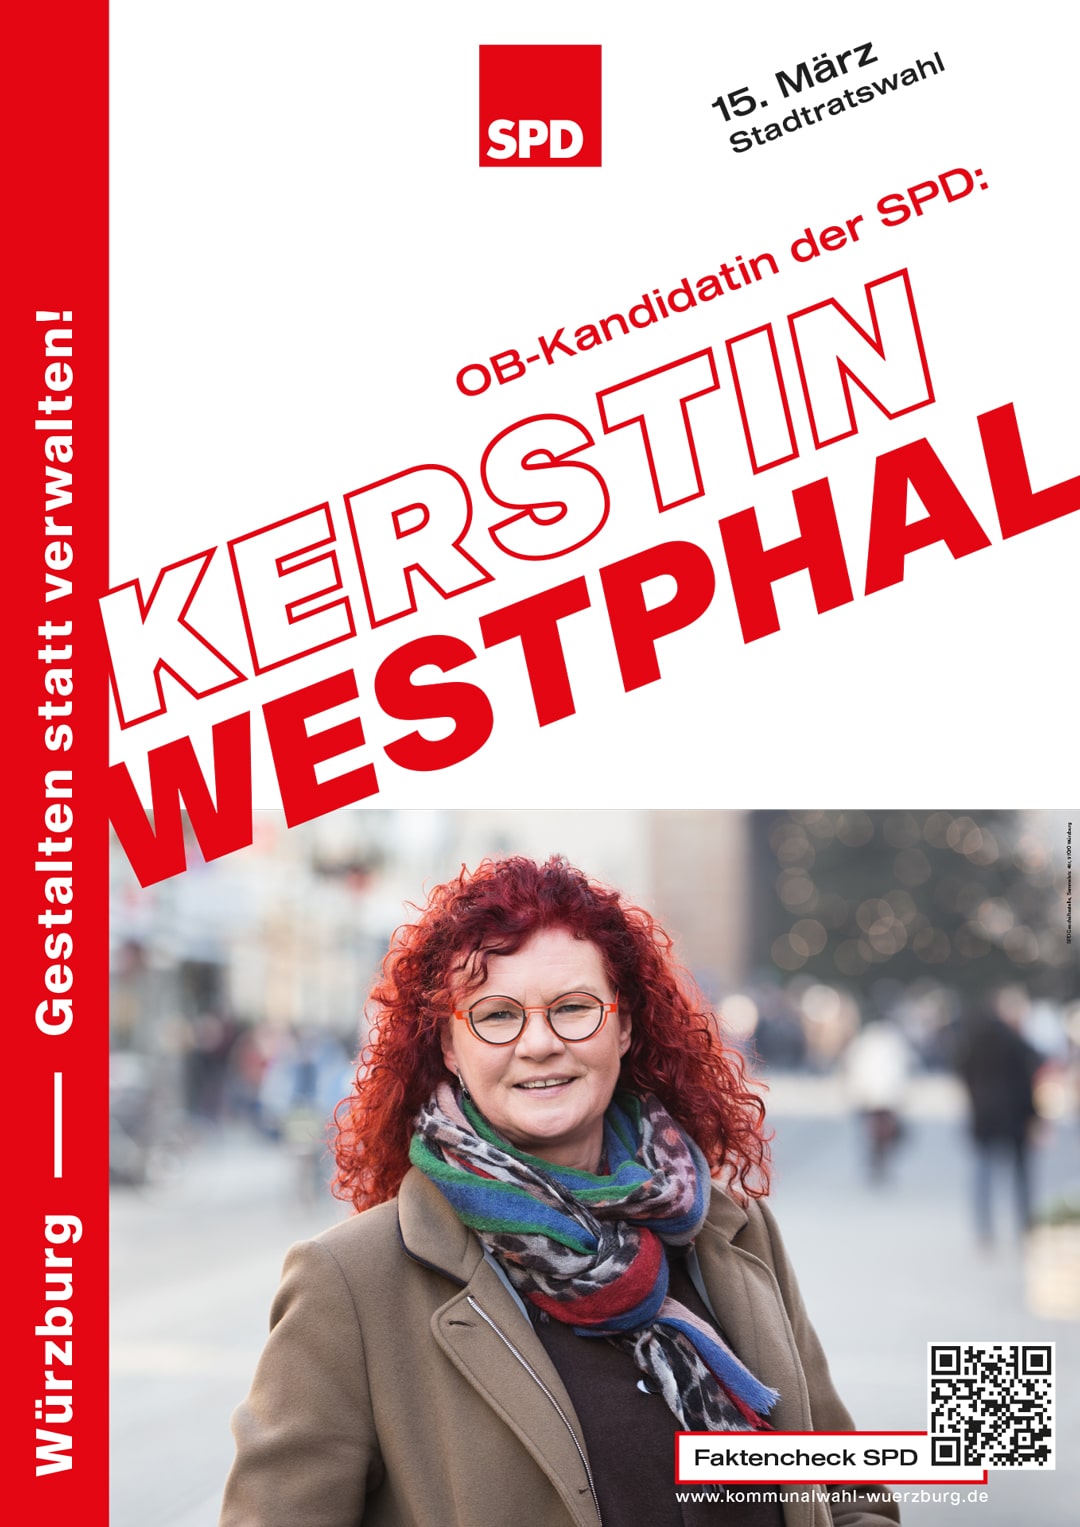 SPD Würzburg Kommunalwahl-Kampagne Design Wahlplakat OB-Kandidatin Westphal